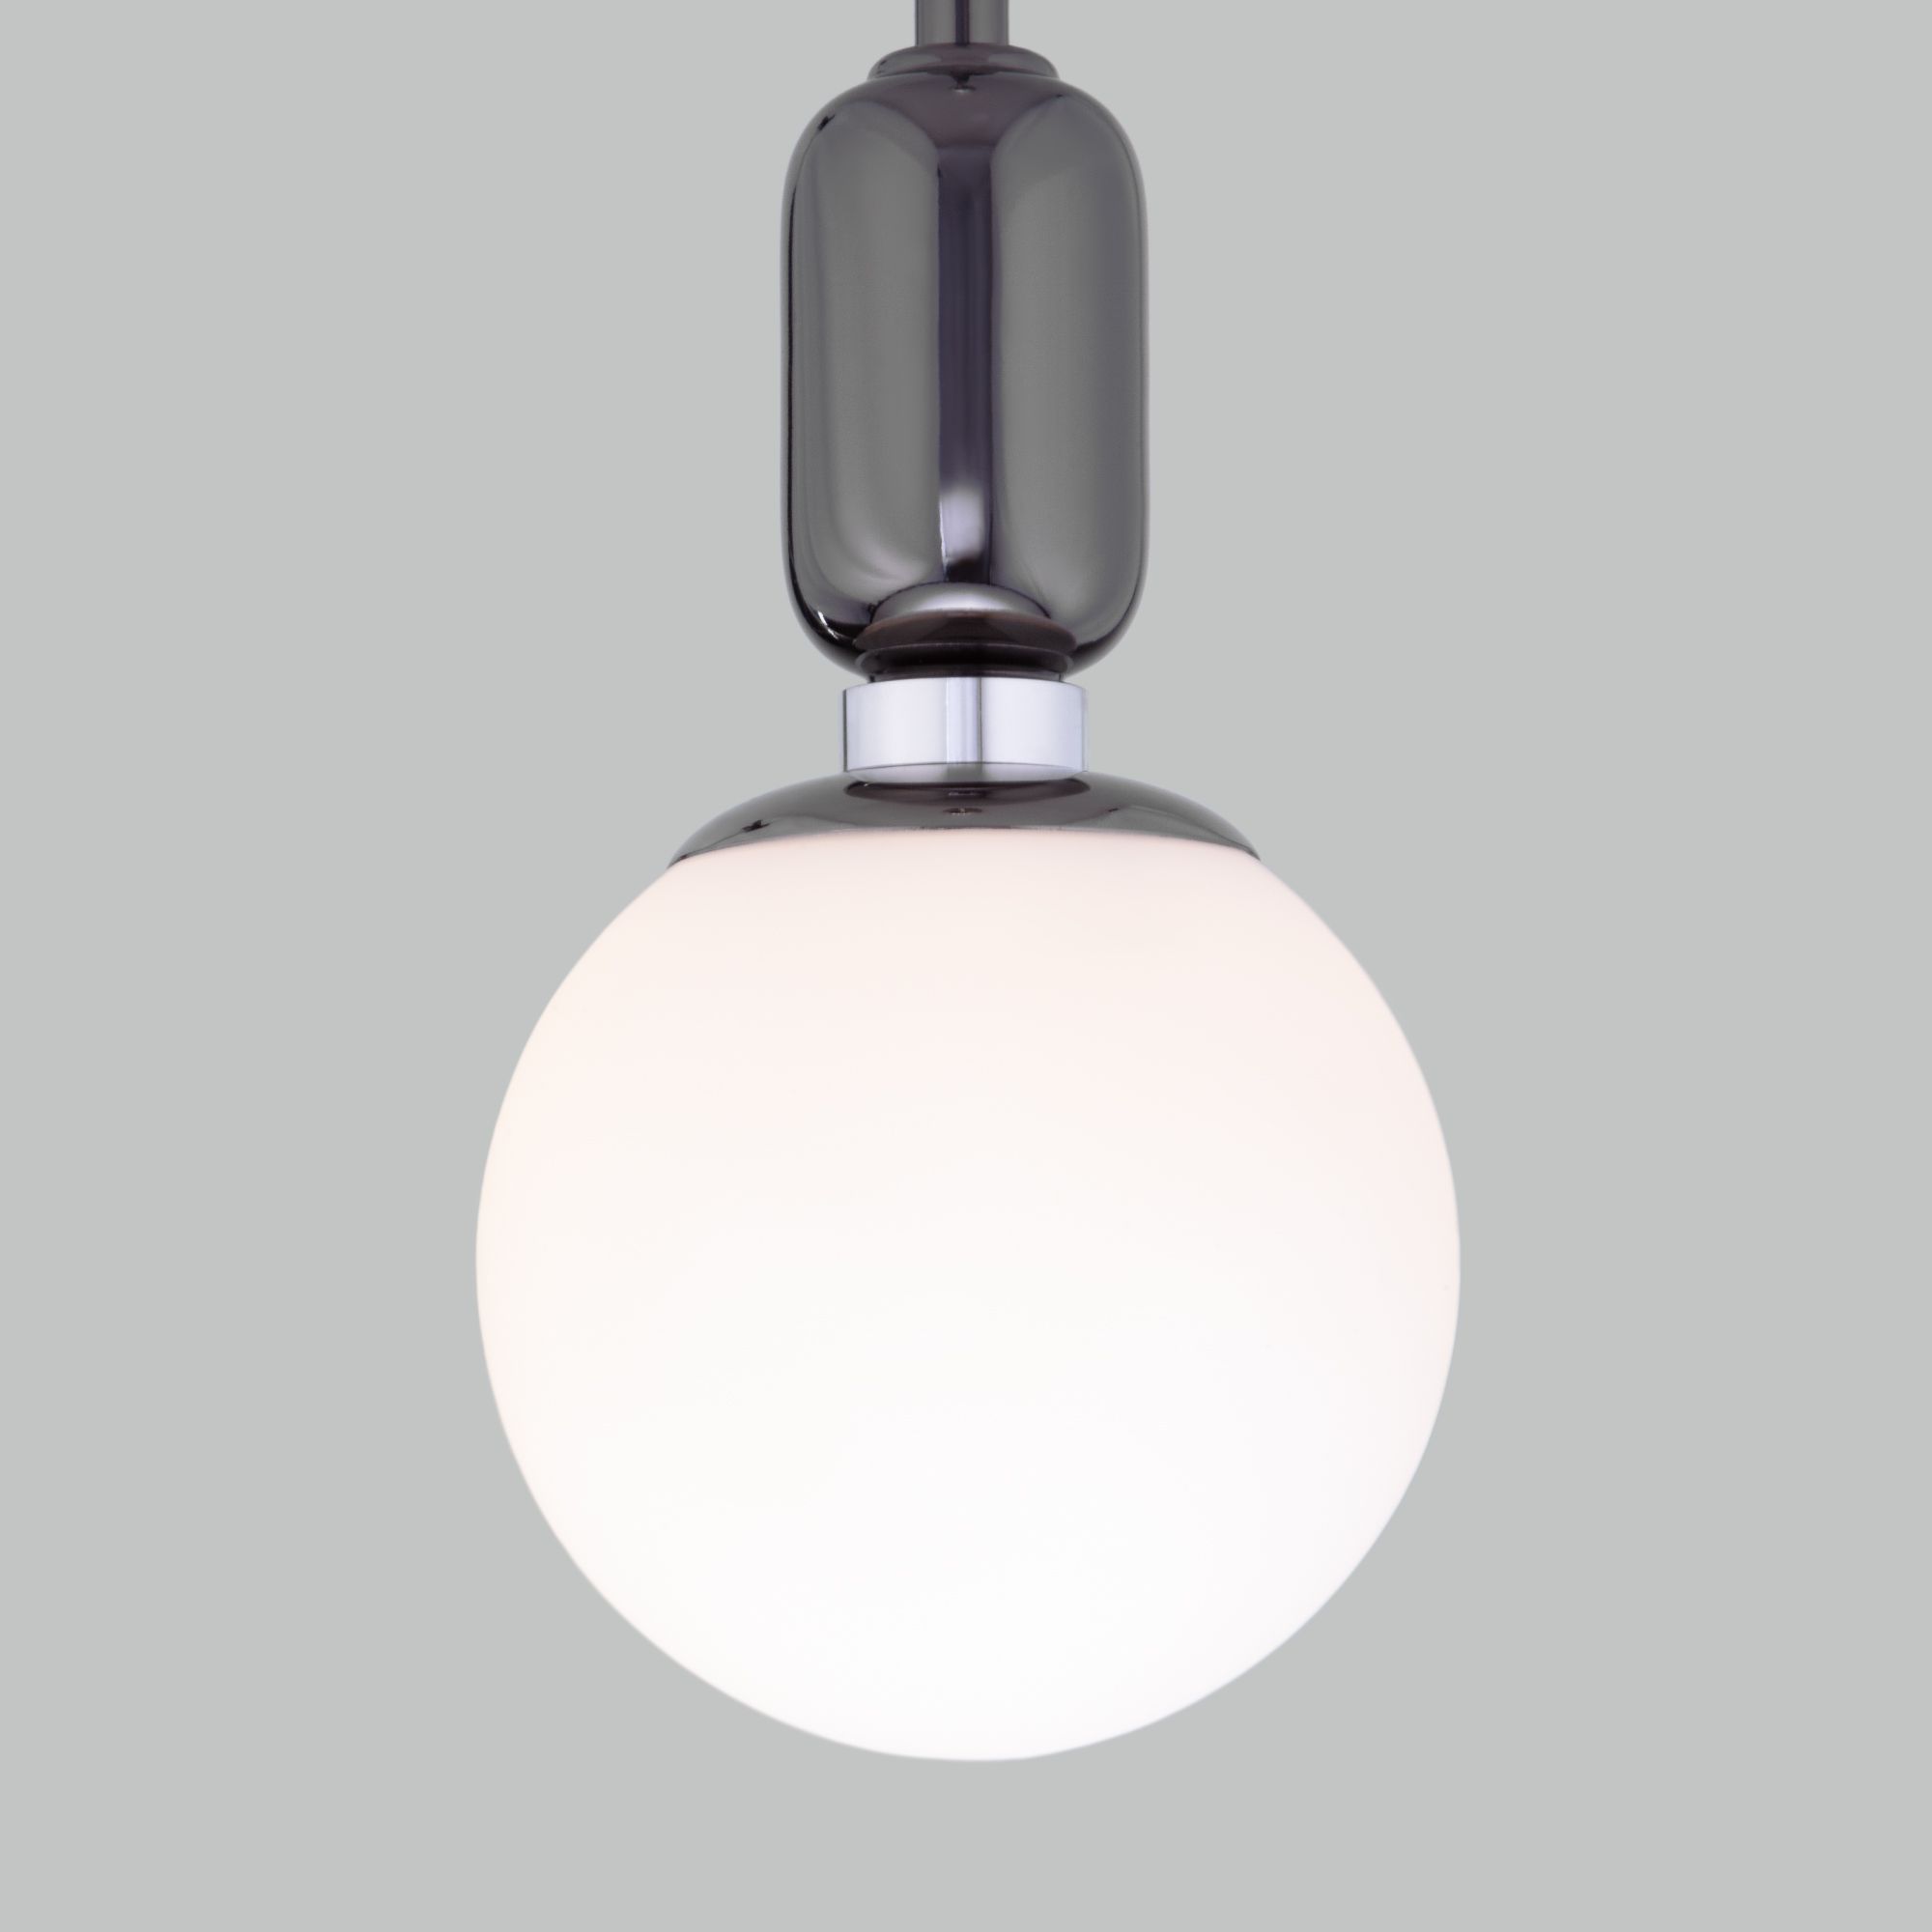 Подвесной светильник со стеклянным плафоном 50151/1 черный жемчуг